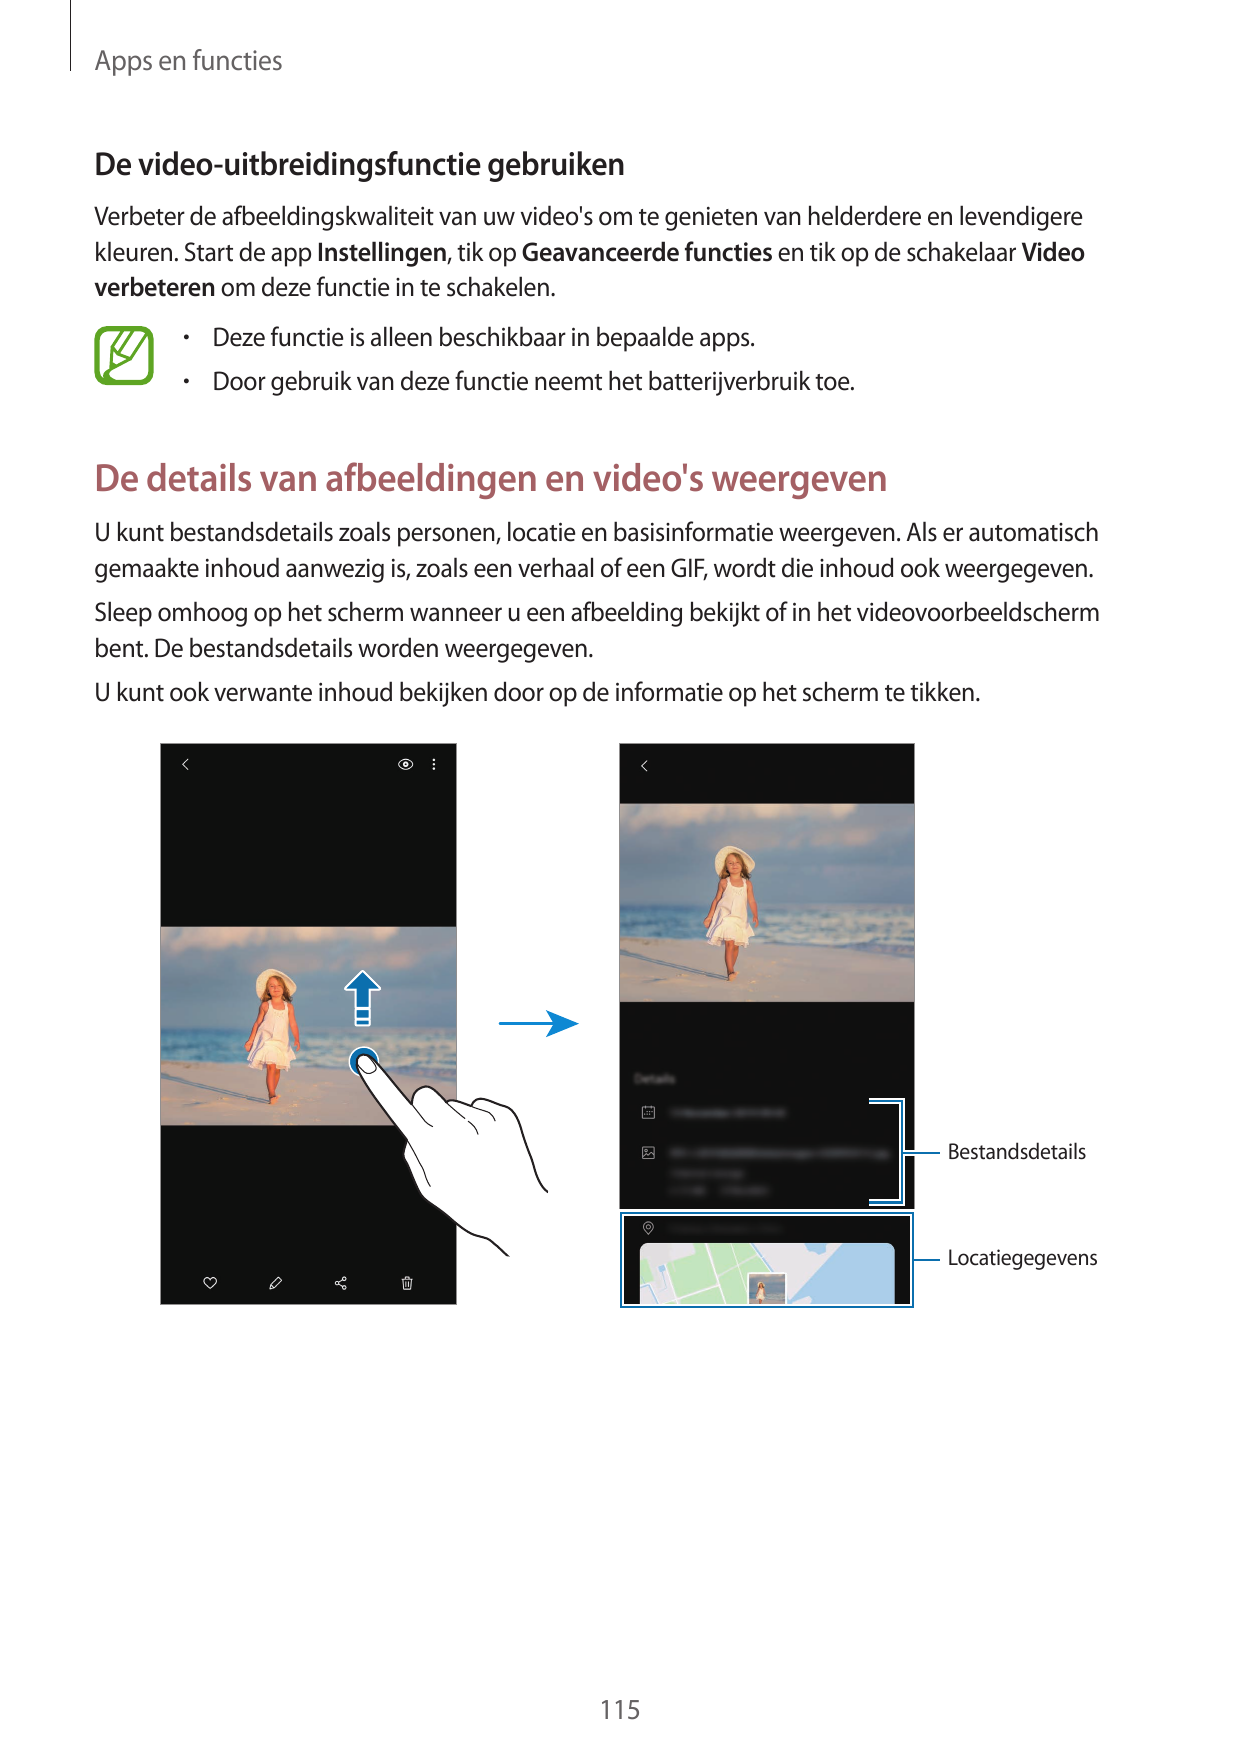 Apps en functiesDe video-uitbreidingsfunctie gebruikenVerbeter de afbeeldingskwaliteit van uw video's om te genieten van helderd